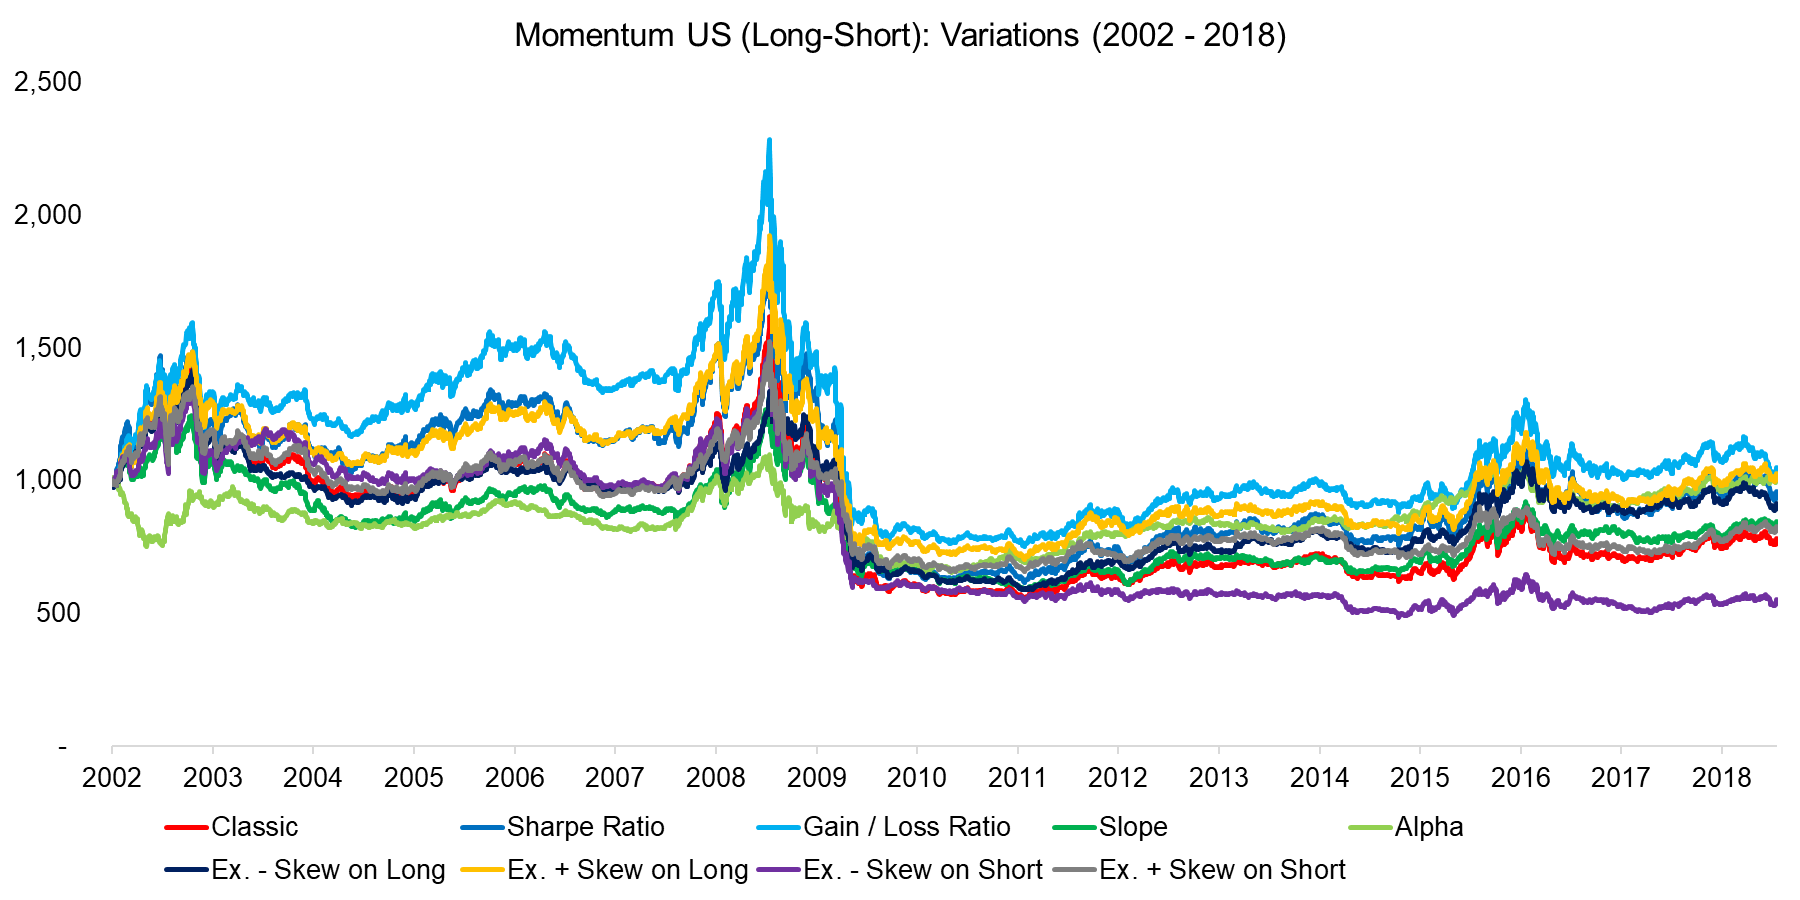 Momentum US (Long-Short) Variations (2002 - 2018)